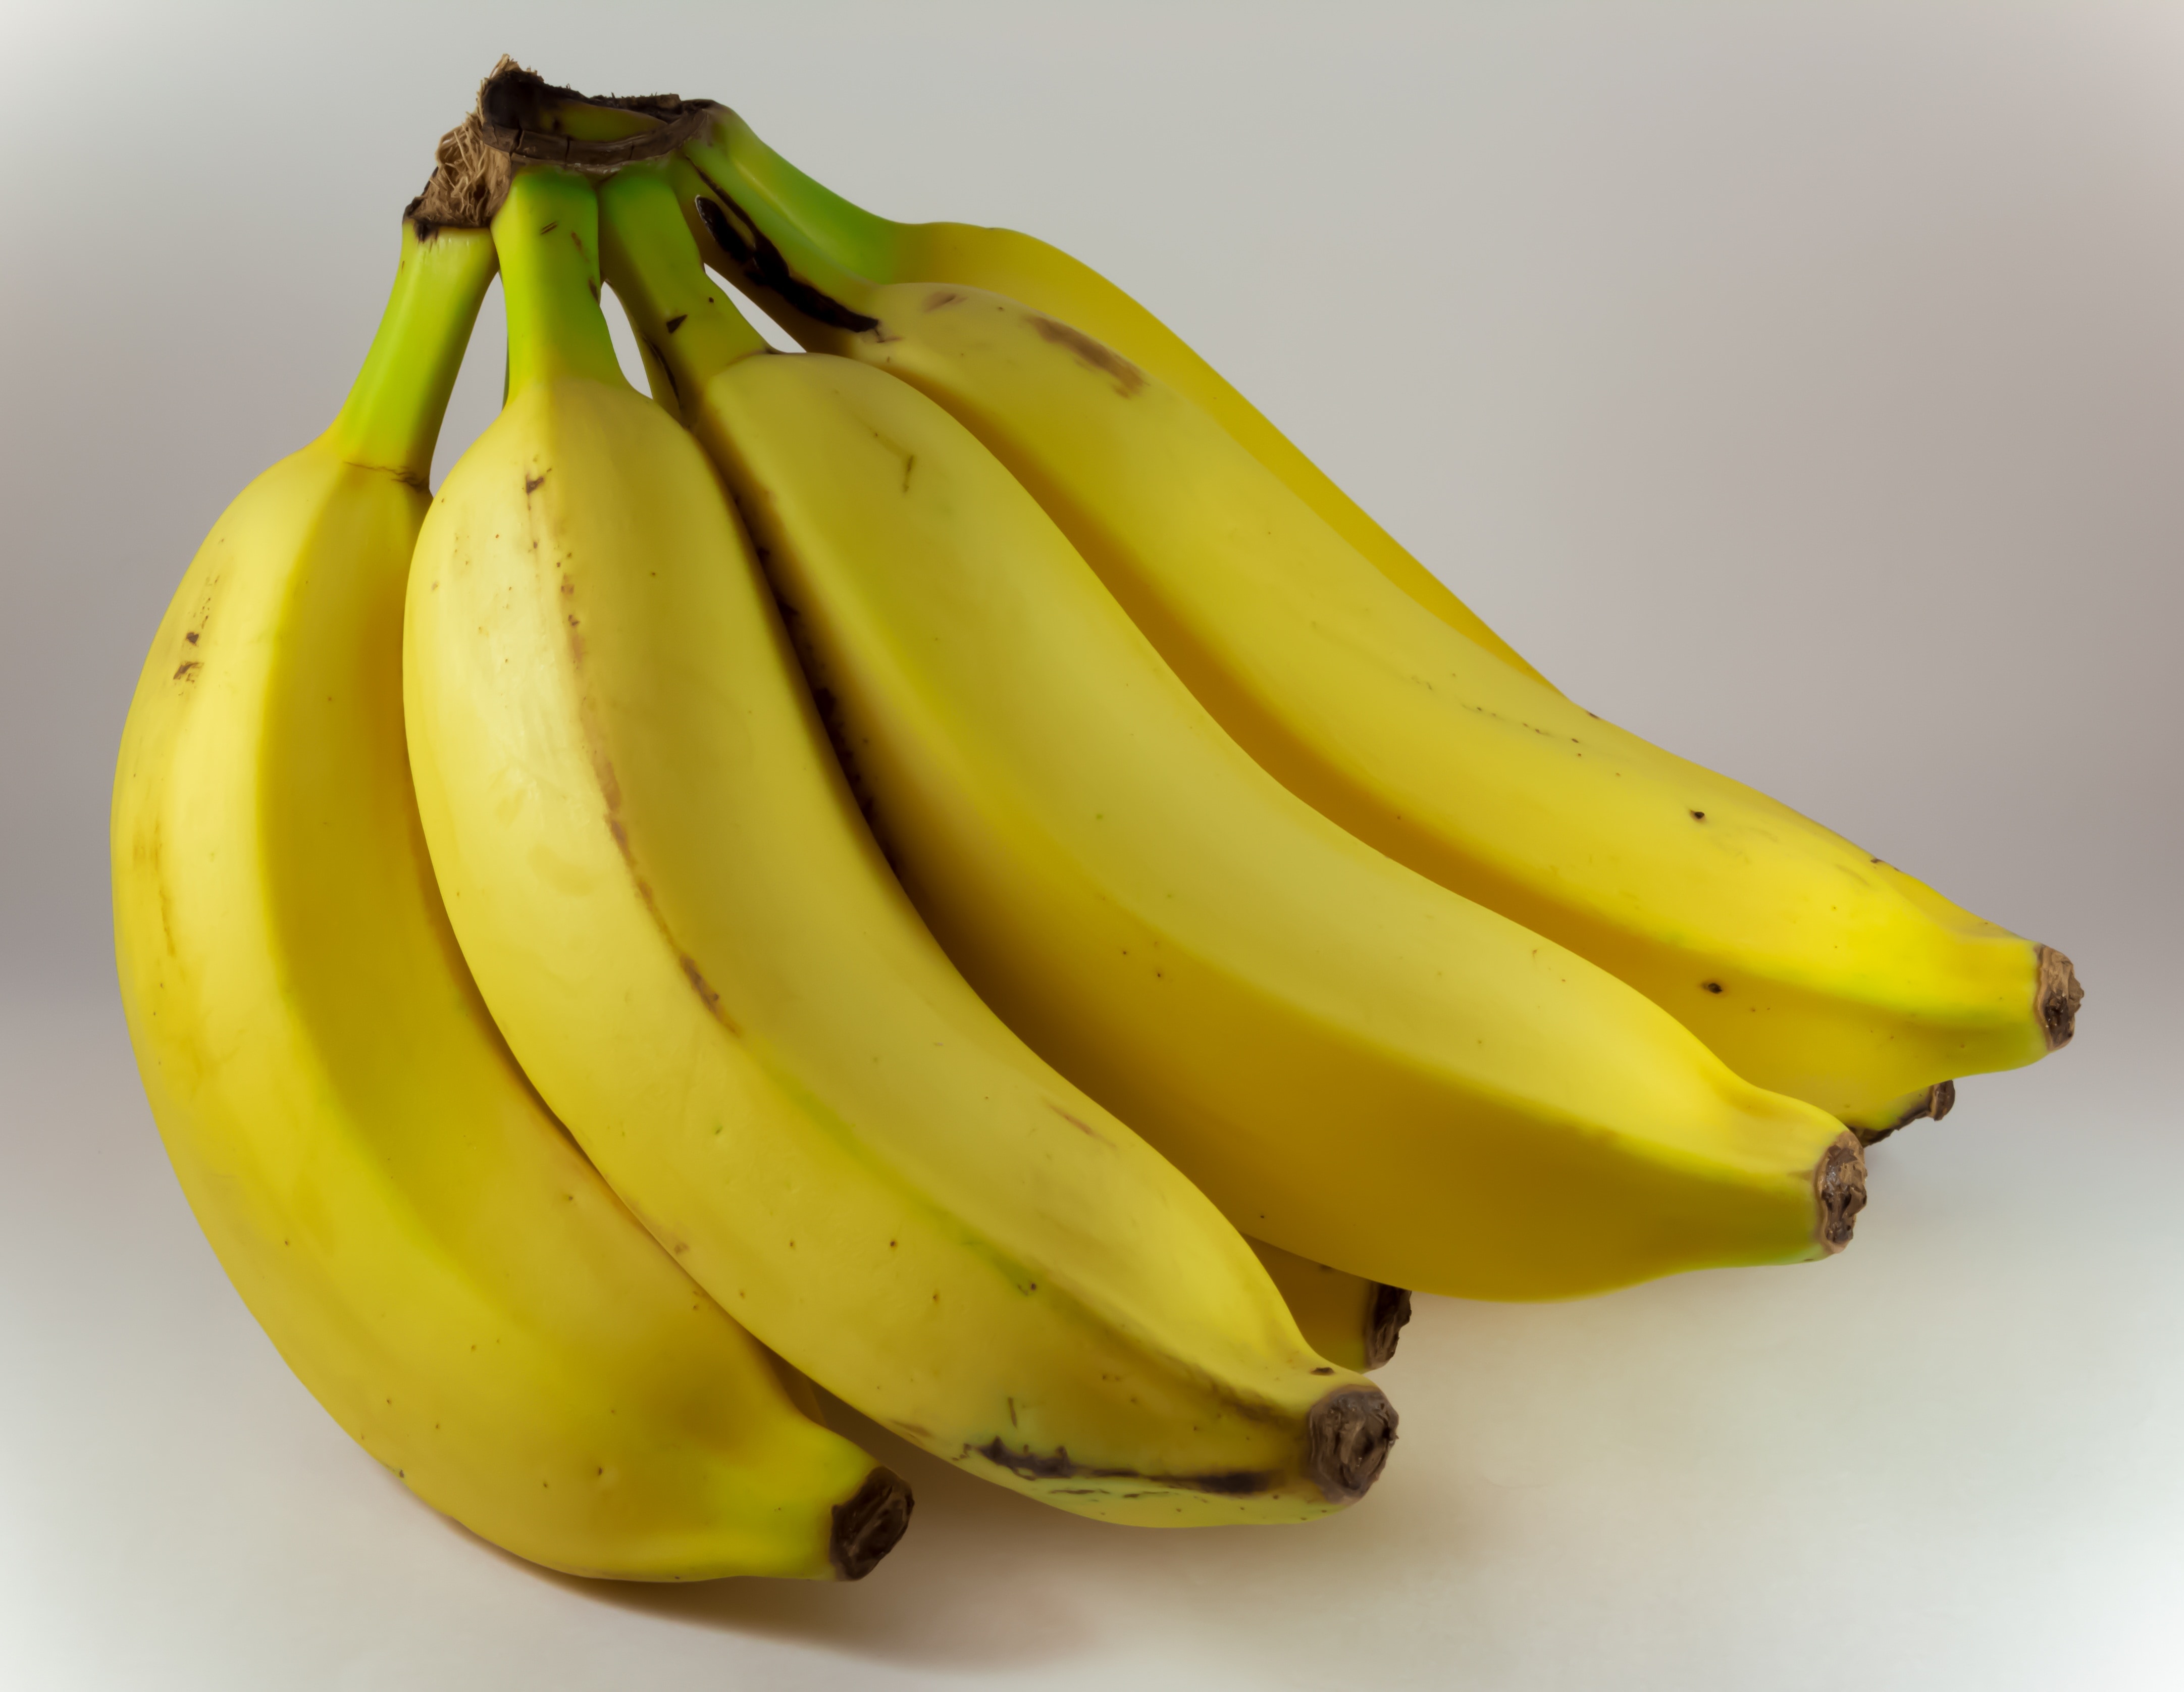 yellow banana bundle